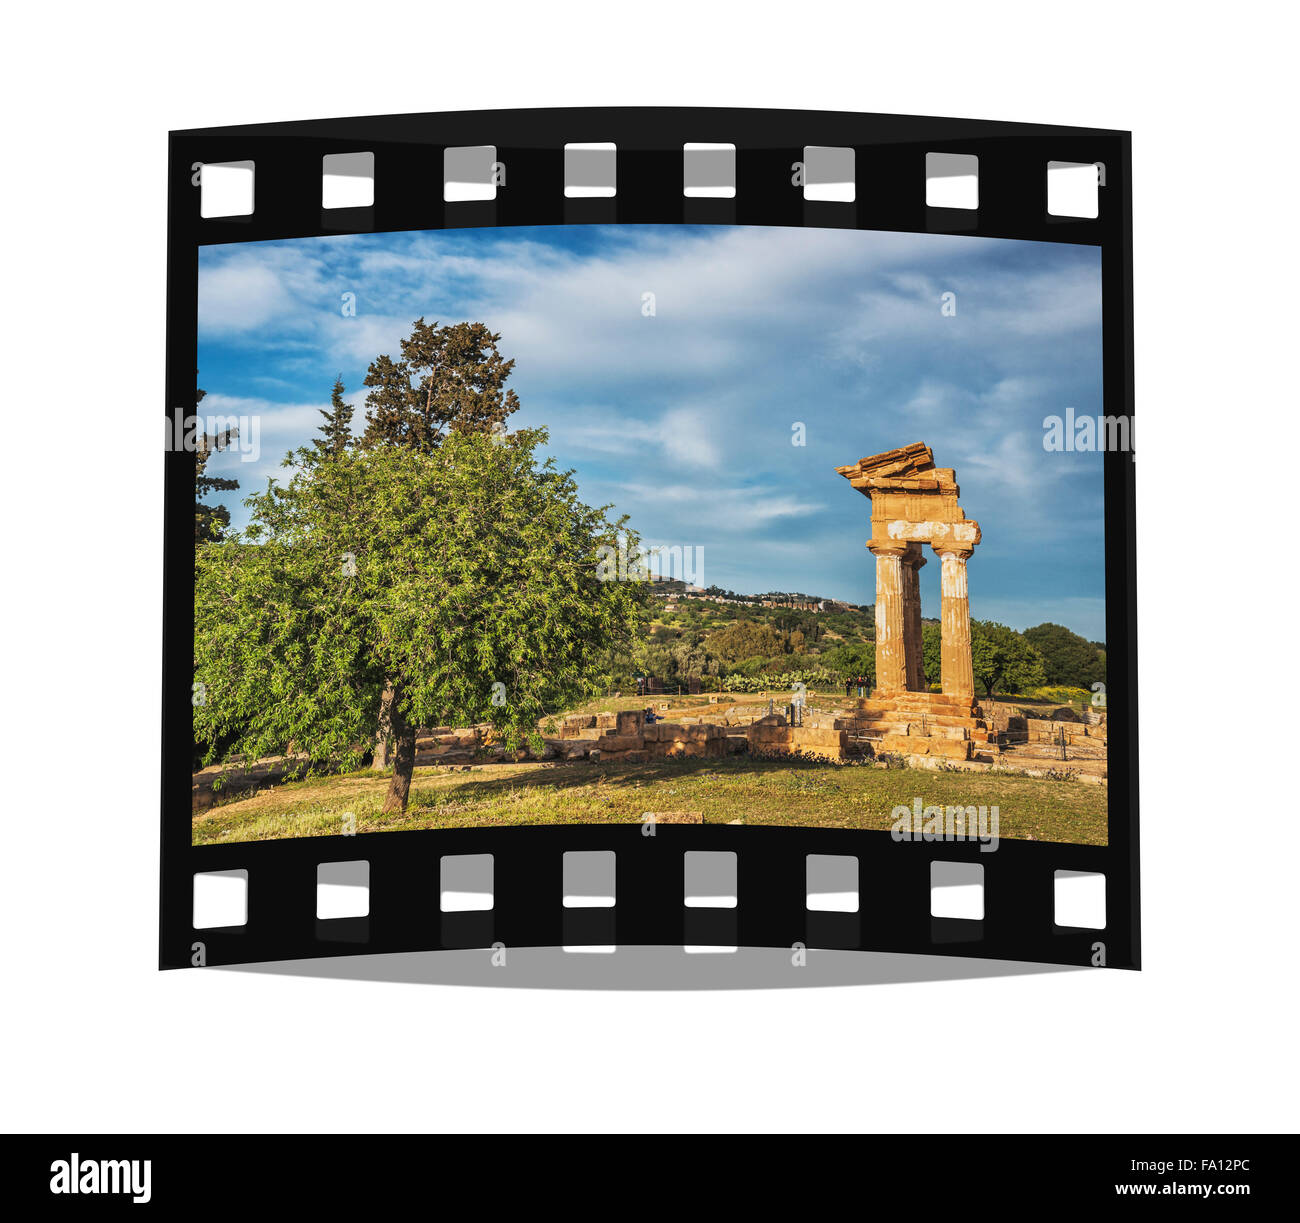 Le Temple de Castor et Pollux appartient à des sites archéologiques d'Agrigente, La Vallée des Temples, Sicile, Italie, Europe Banque D'Images